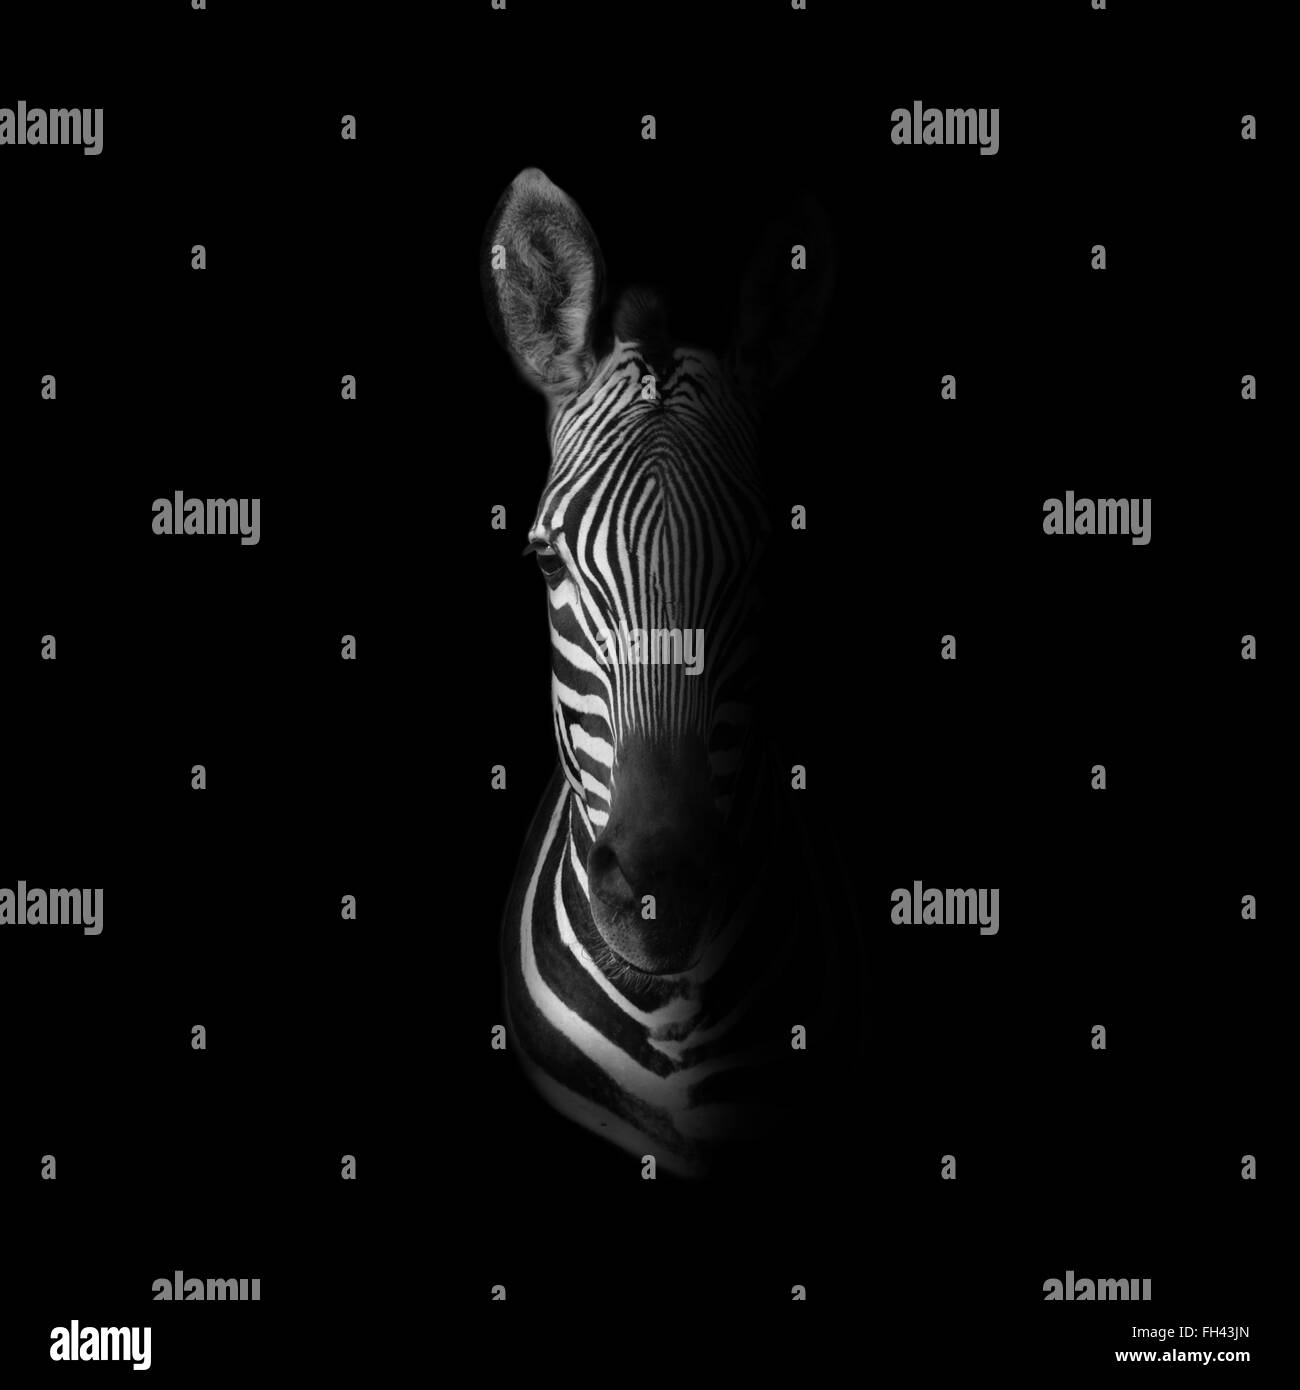 Dunklen Monochrom Porträt eines Cape Mountain Zebras Stockfoto